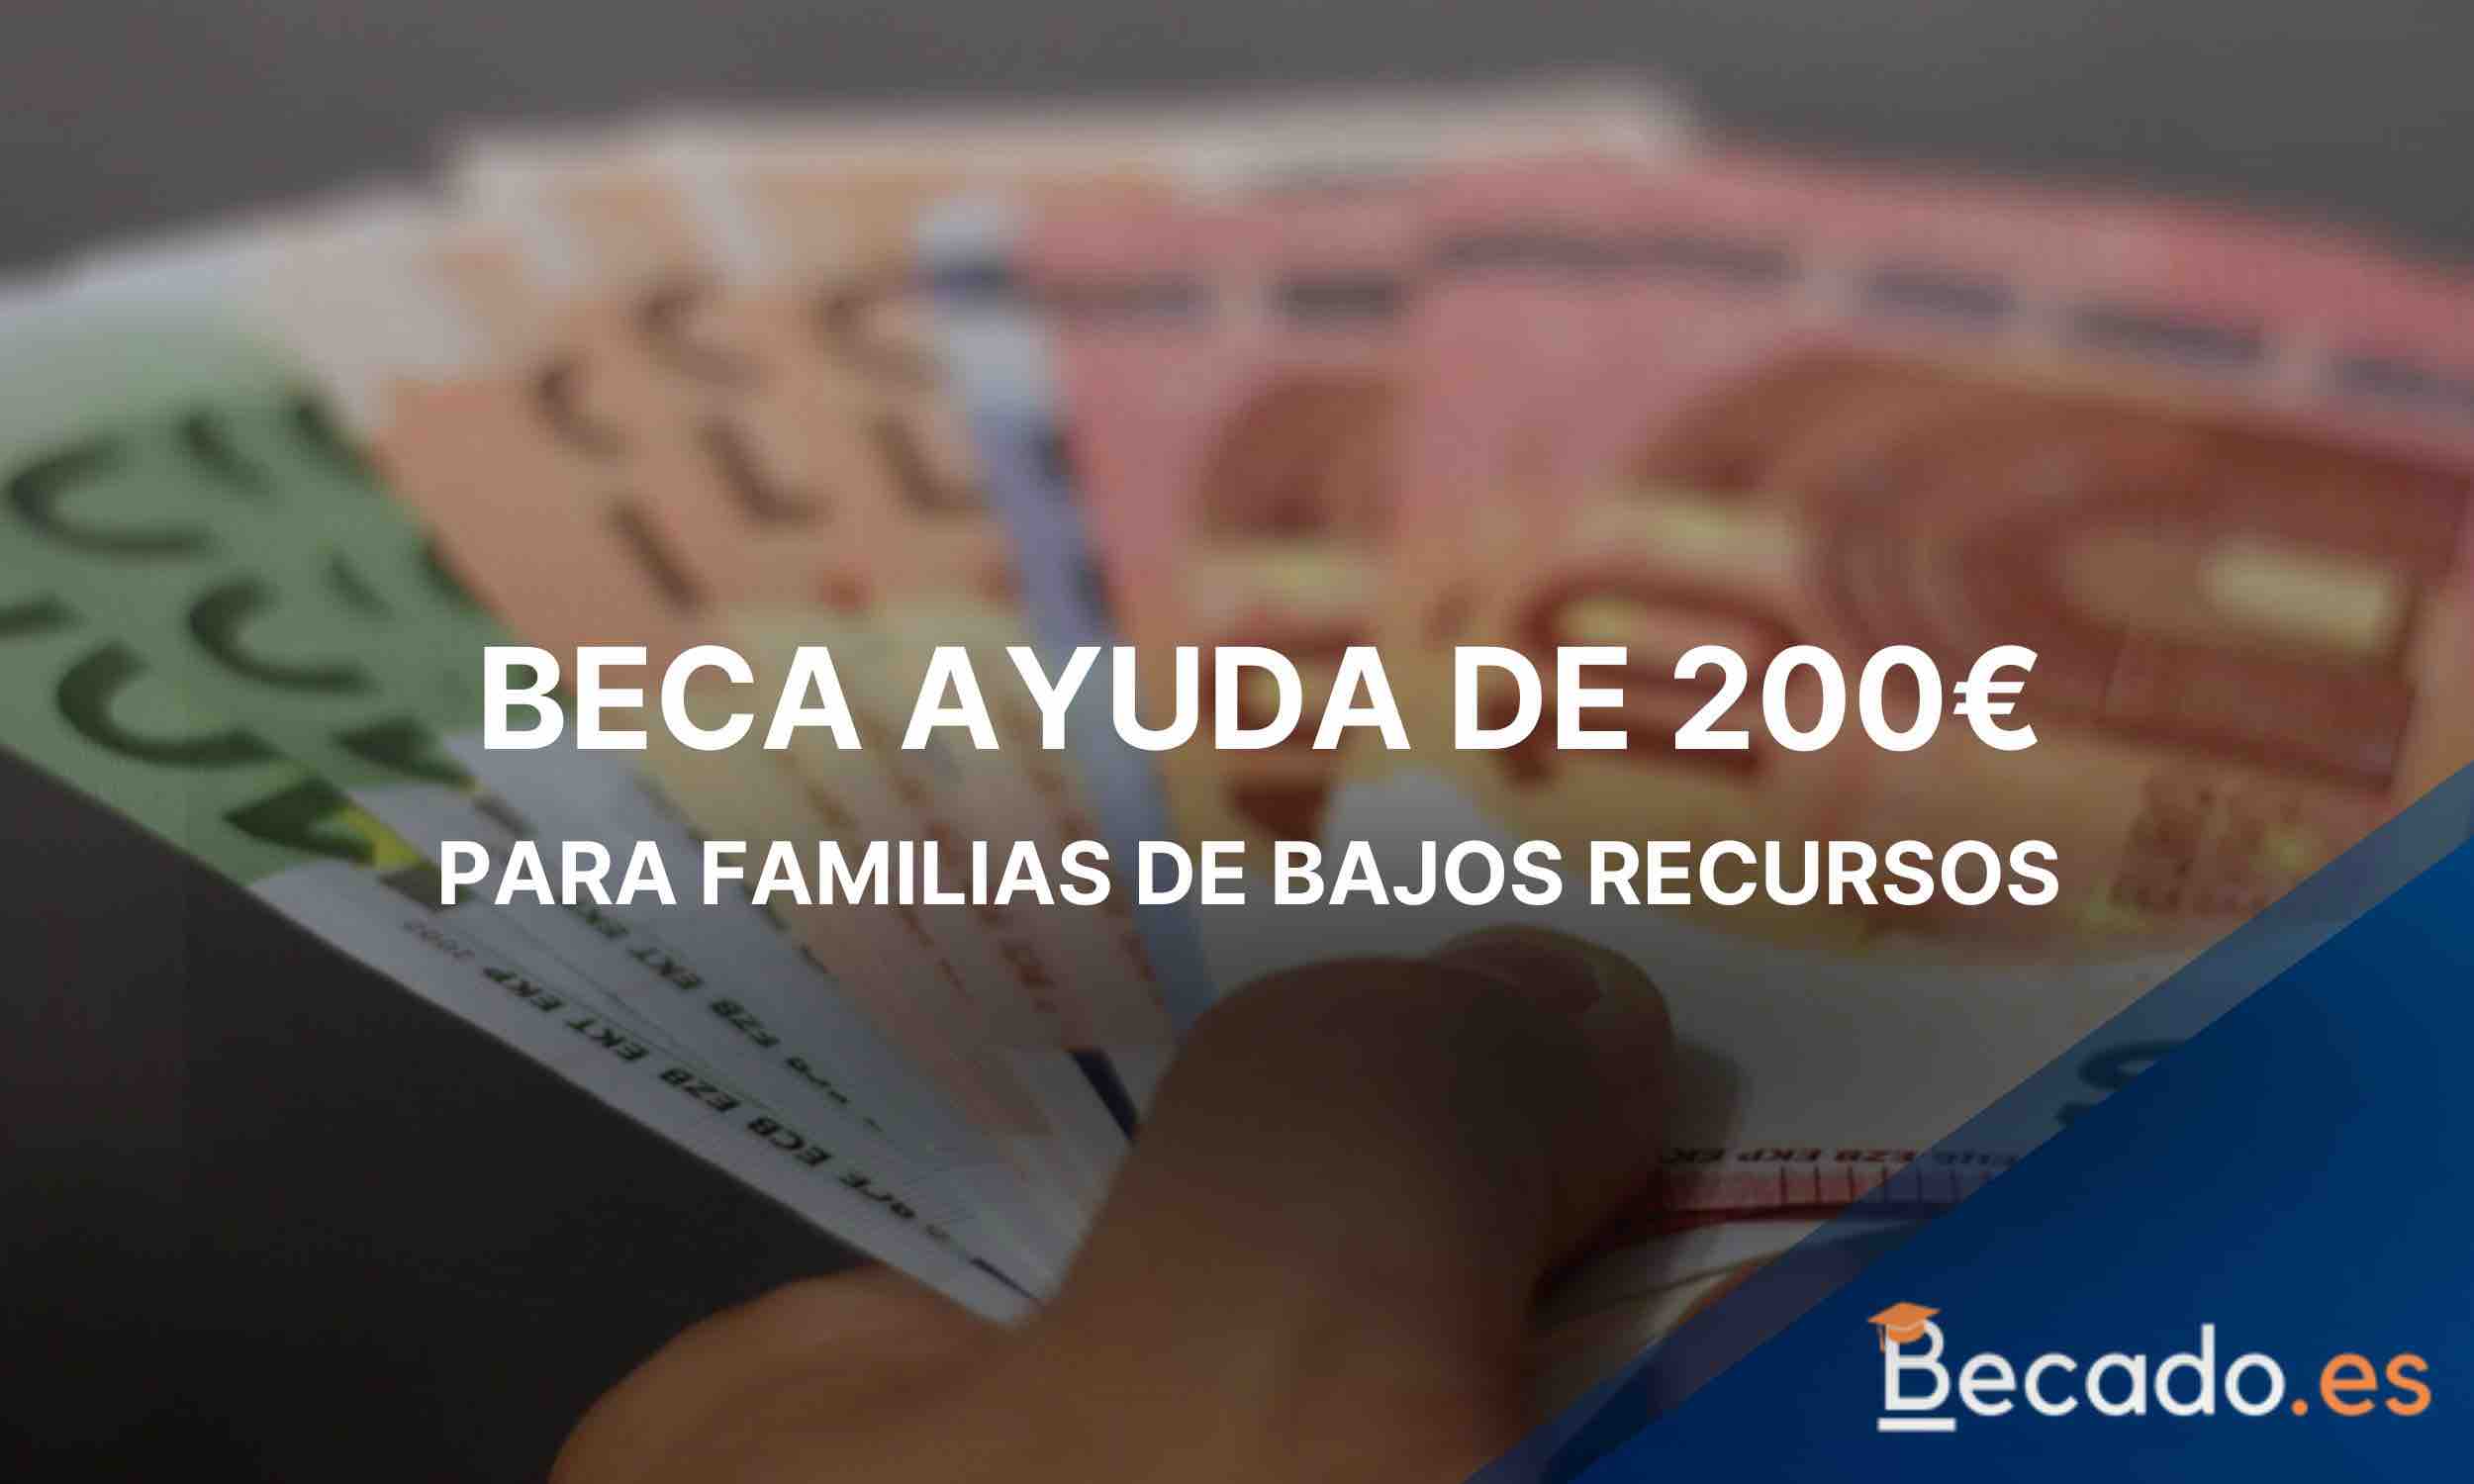 Beca Ayuda 200€ para familias de bajos recursos